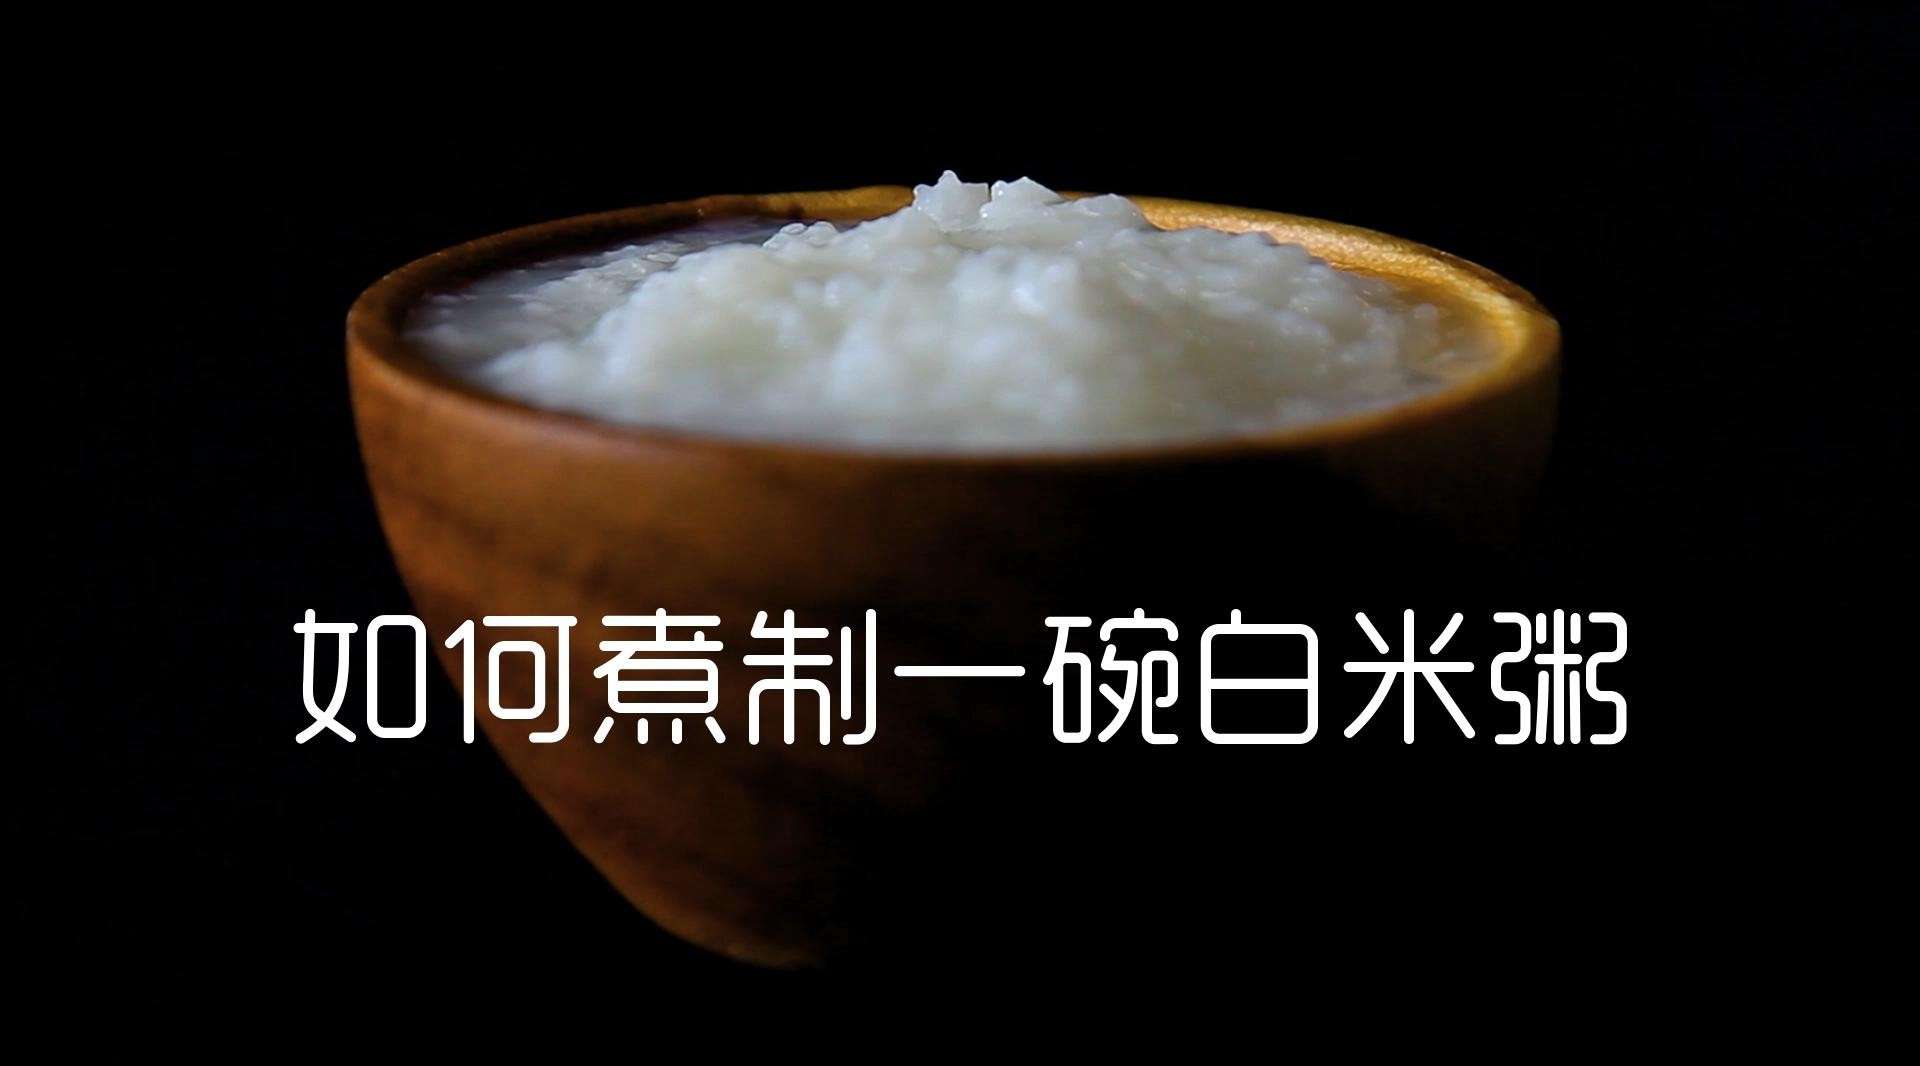 如何煮制一碗白米粥